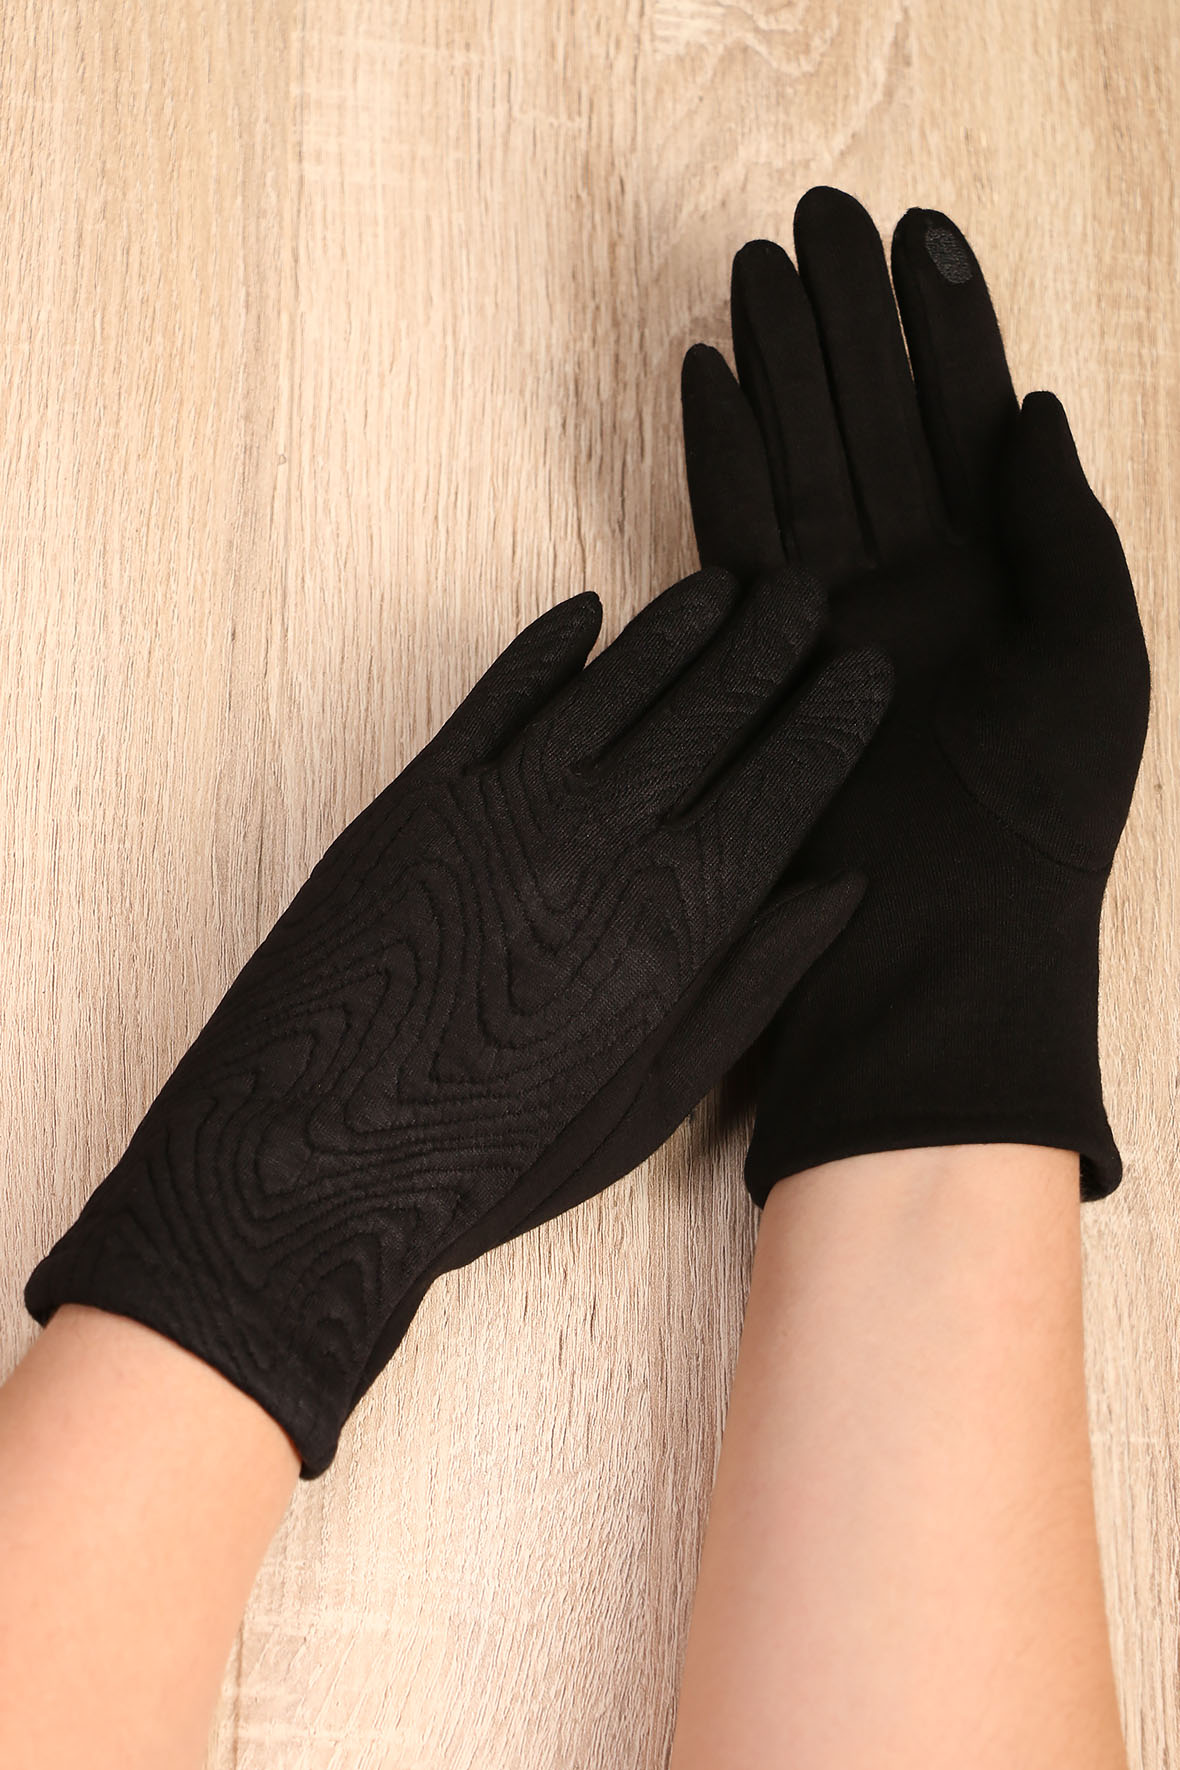  перчатки для женщин в е almondshop